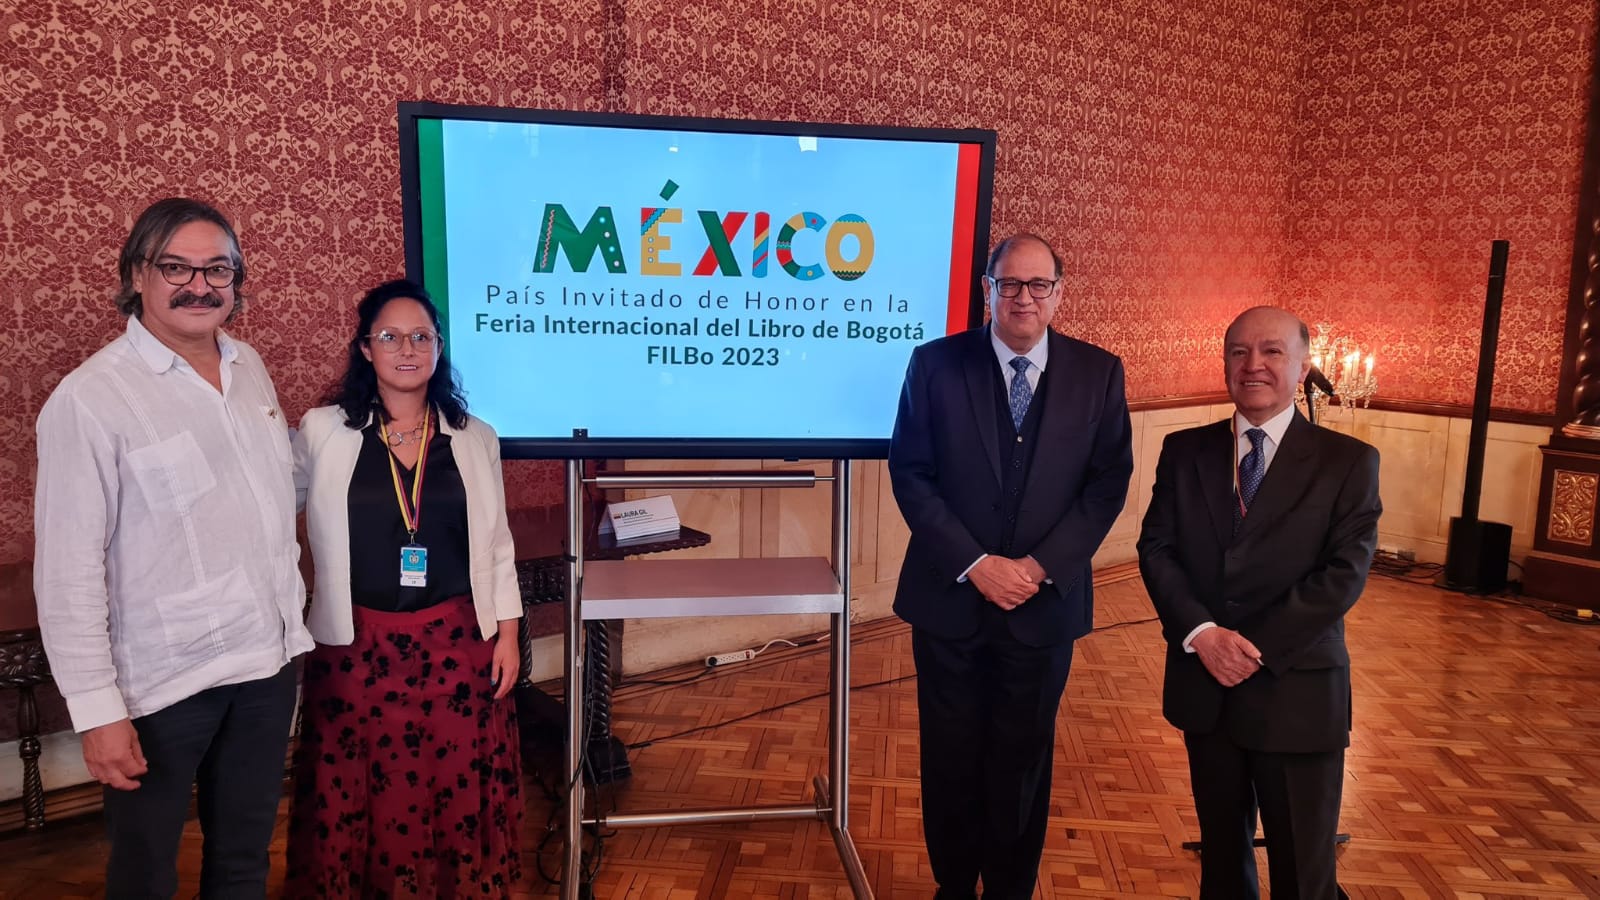 México, país invitado de honor en la Feria Internacional del Libro de Bogotá 2023 